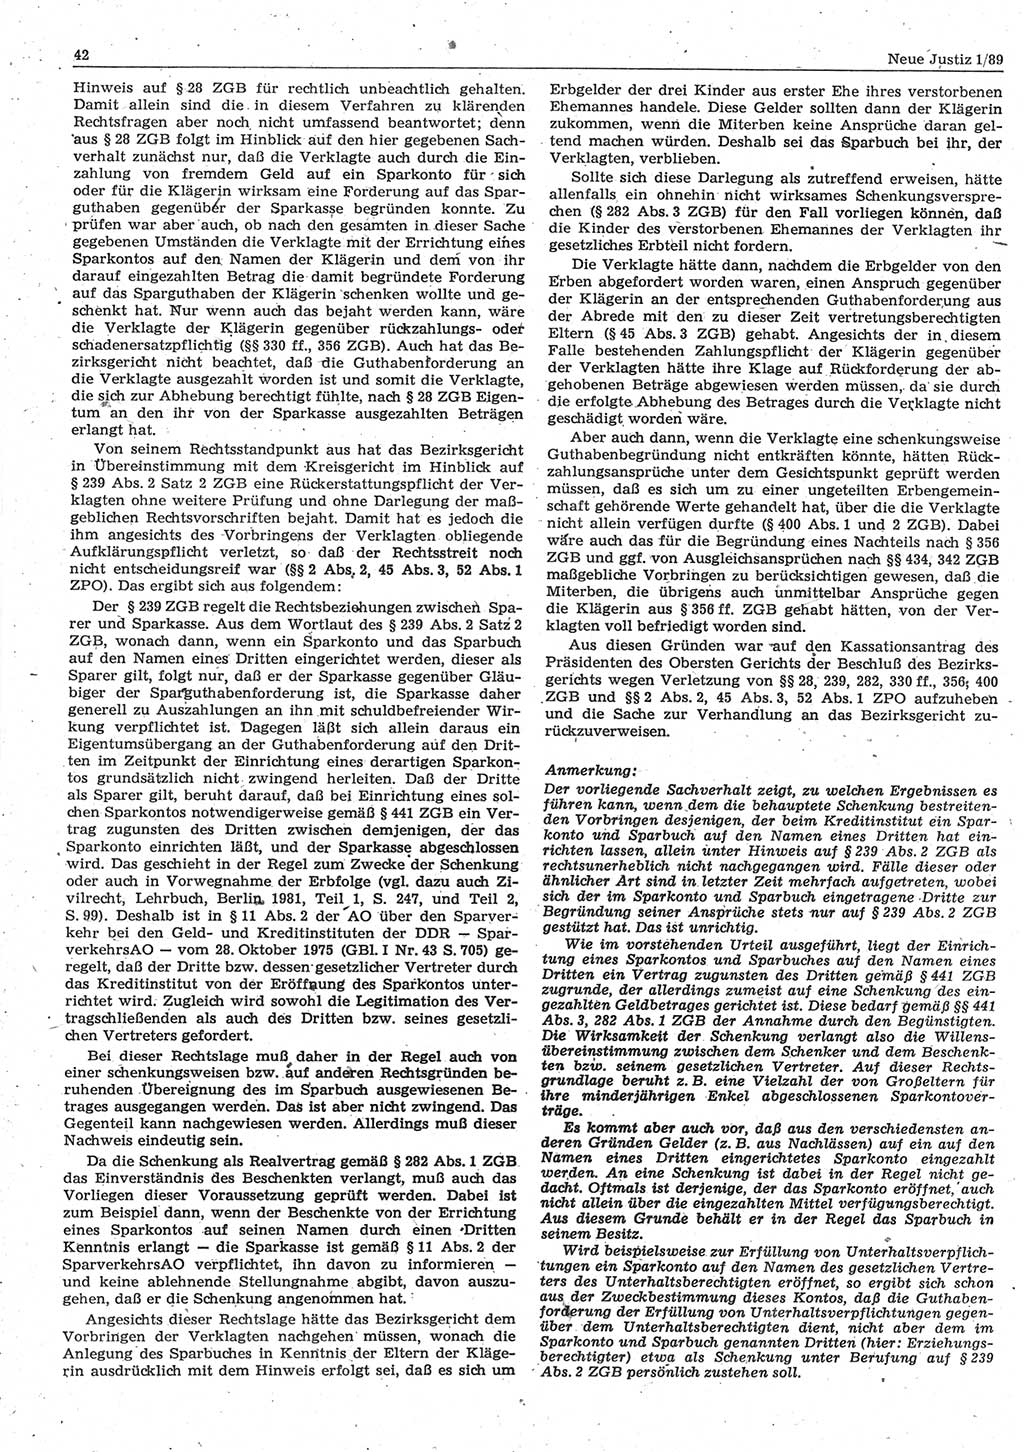 Neue Justiz (NJ), Zeitschrift für sozialistisches Recht und Gesetzlichkeit [Deutsche Demokratische Republik (DDR)], 43. Jahrgang 1989, Seite 42 (NJ DDR 1989, S. 42)